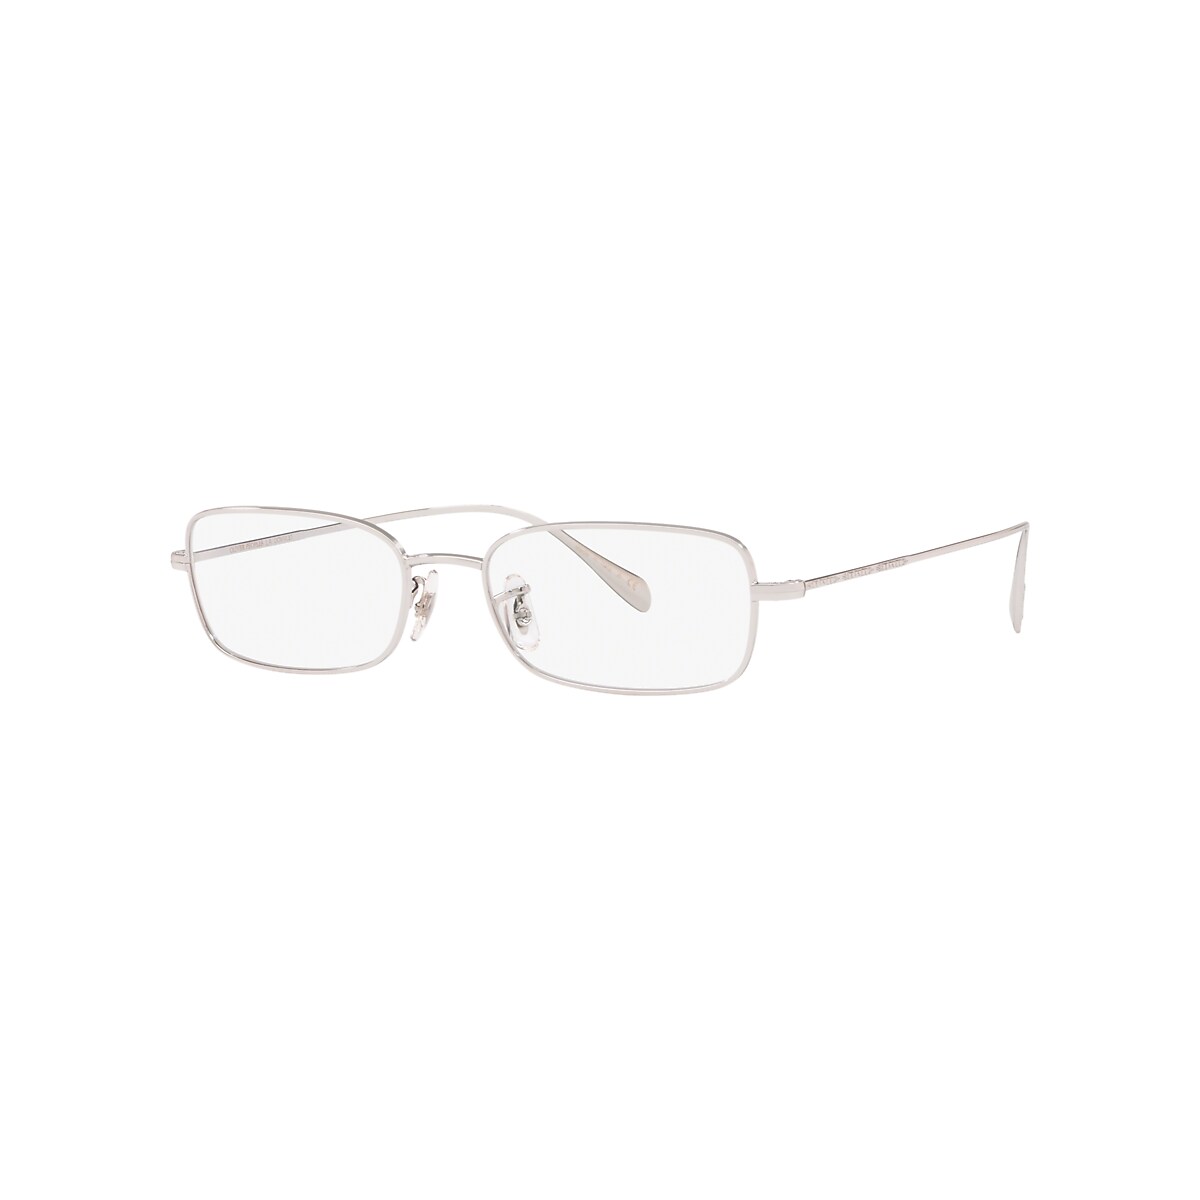 OV1253 Eyeglasses Silver | Oliver Peoples USA